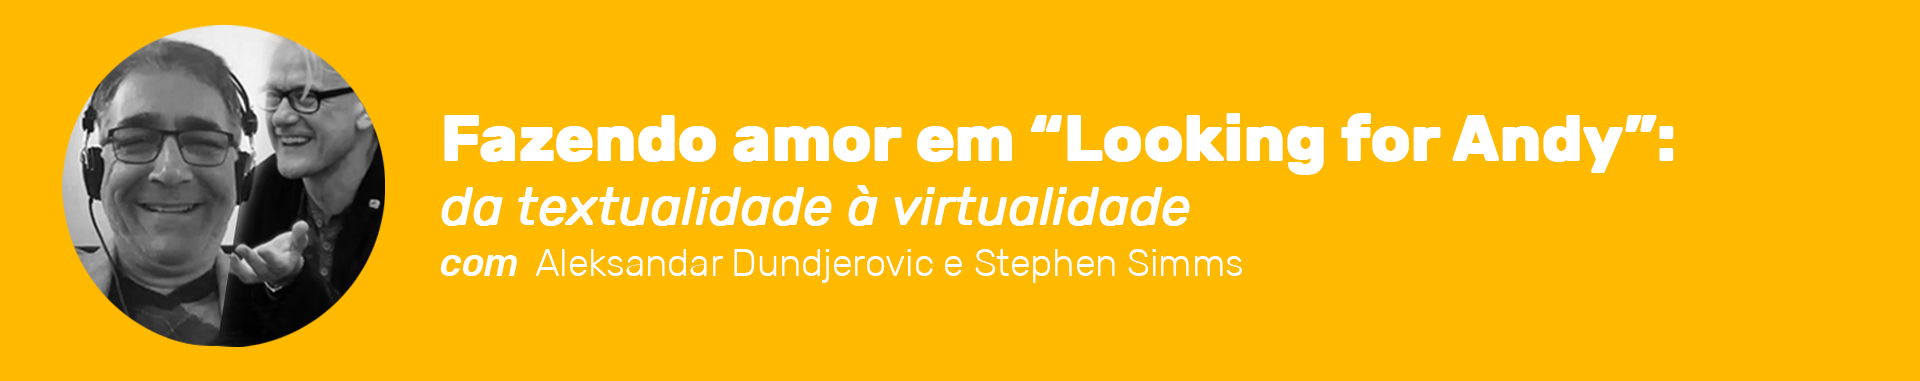 Cabeçalho de Workshop Internacional Fazendo amor em “Looking for Andy”: da textualidade à virtualidade com Aleksandar Dundjerovic e Stephen Simms